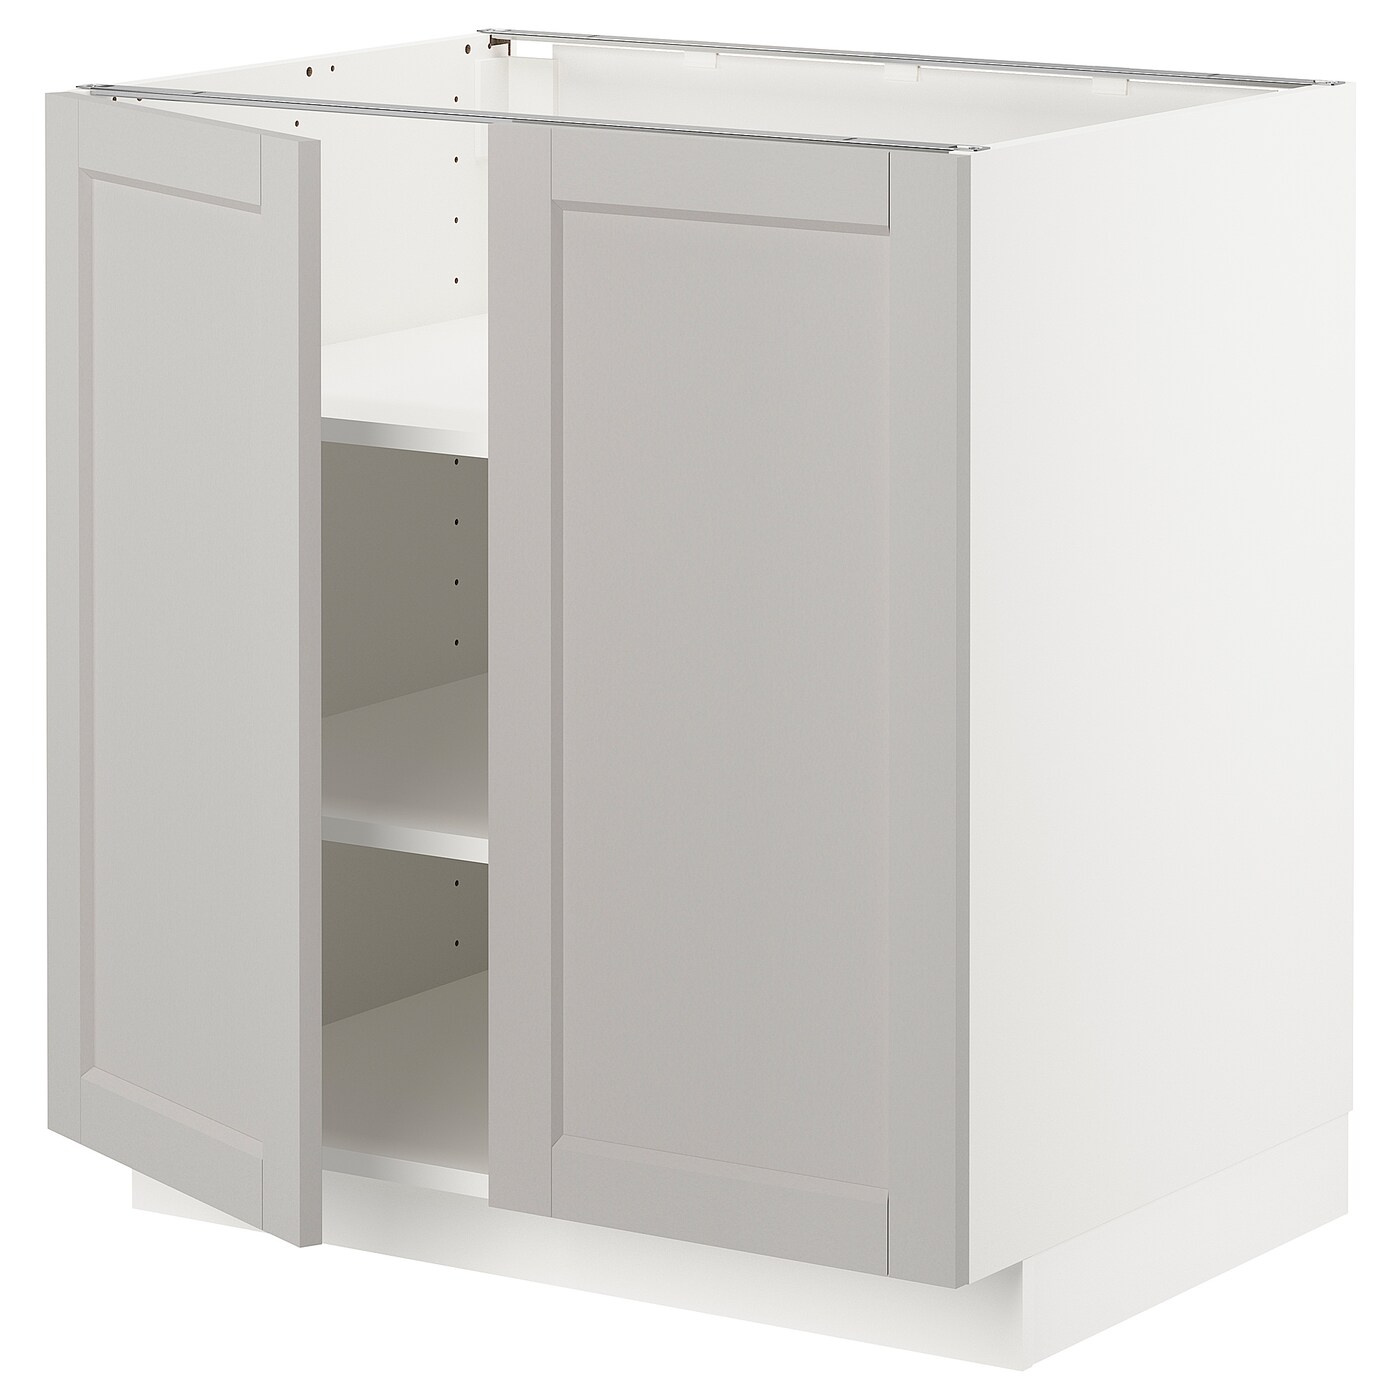 Напольный шкаф - IKEA METOD, 88x62x80см, белый/светло-серый, МЕТОД ИКЕА